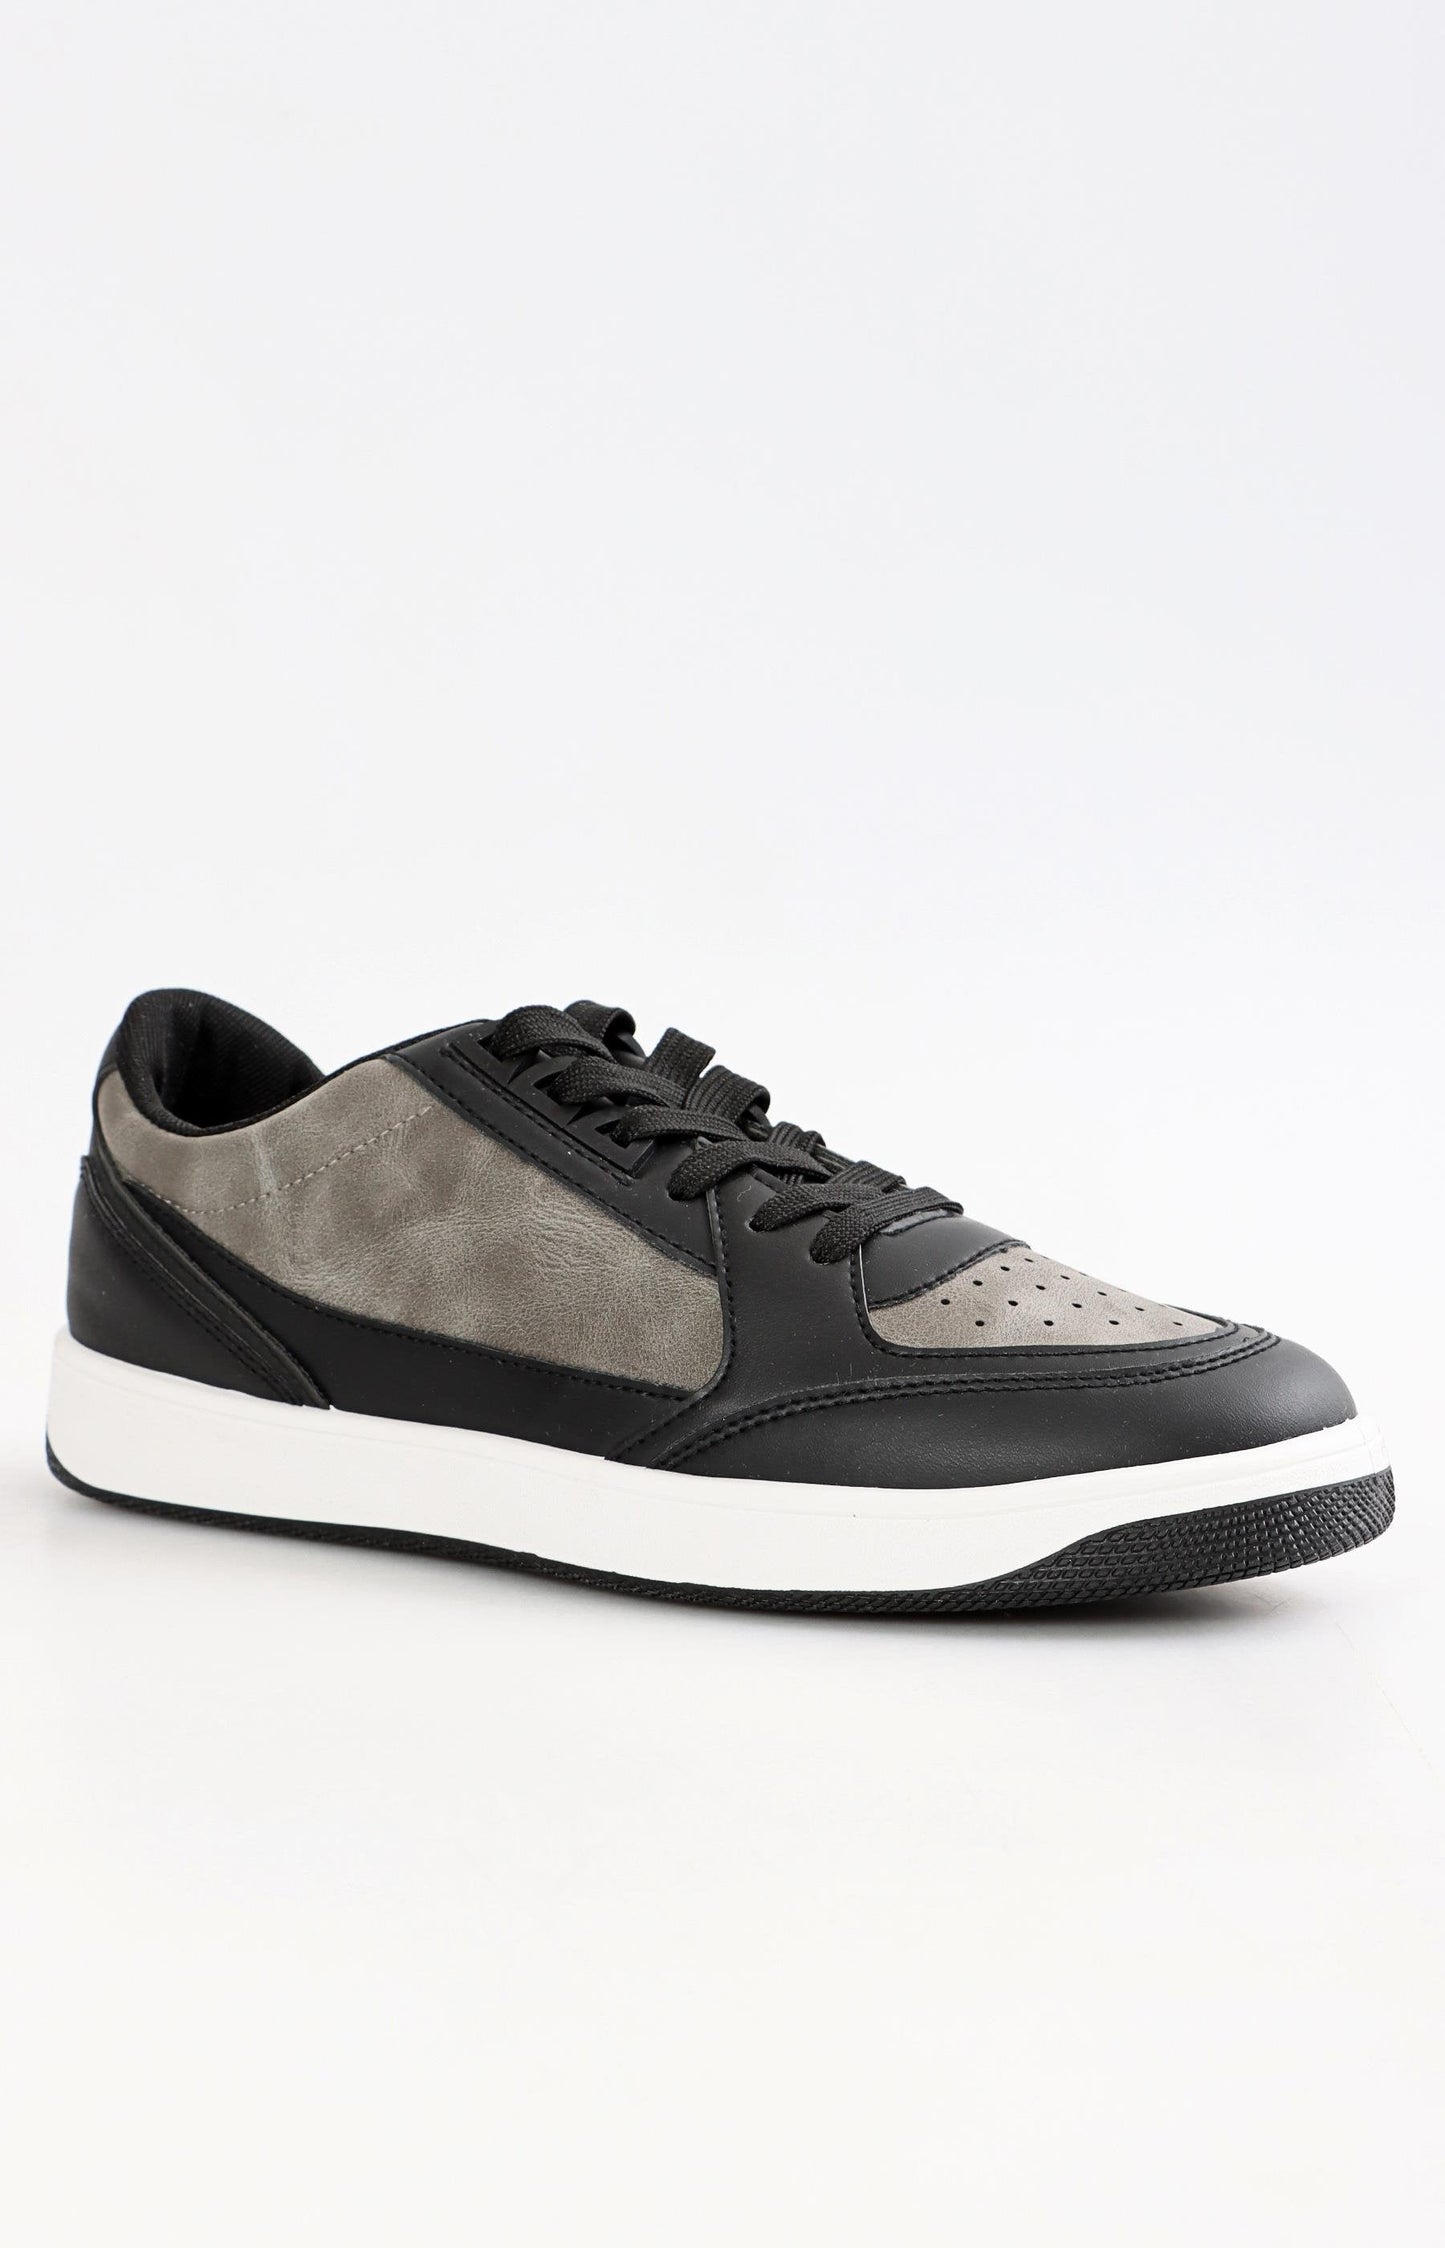 Mens Low Cut Casual Sneakers - Grey-Black